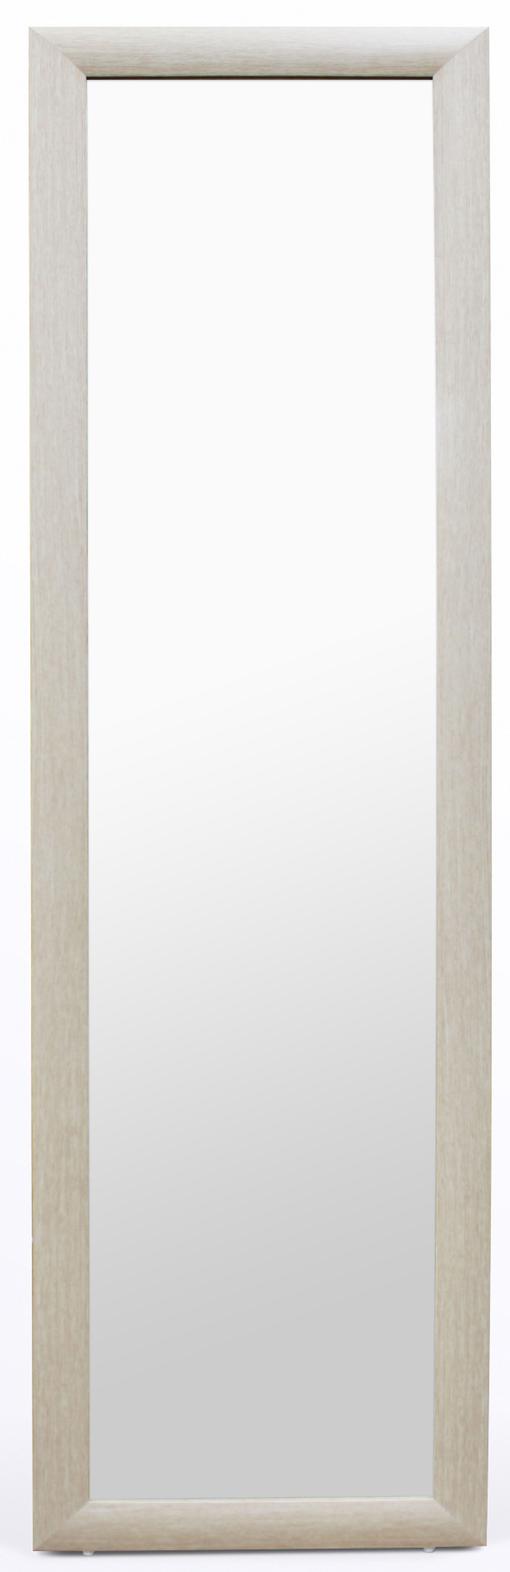 Зеркало напольное Континент 45x160 см дуб Б004